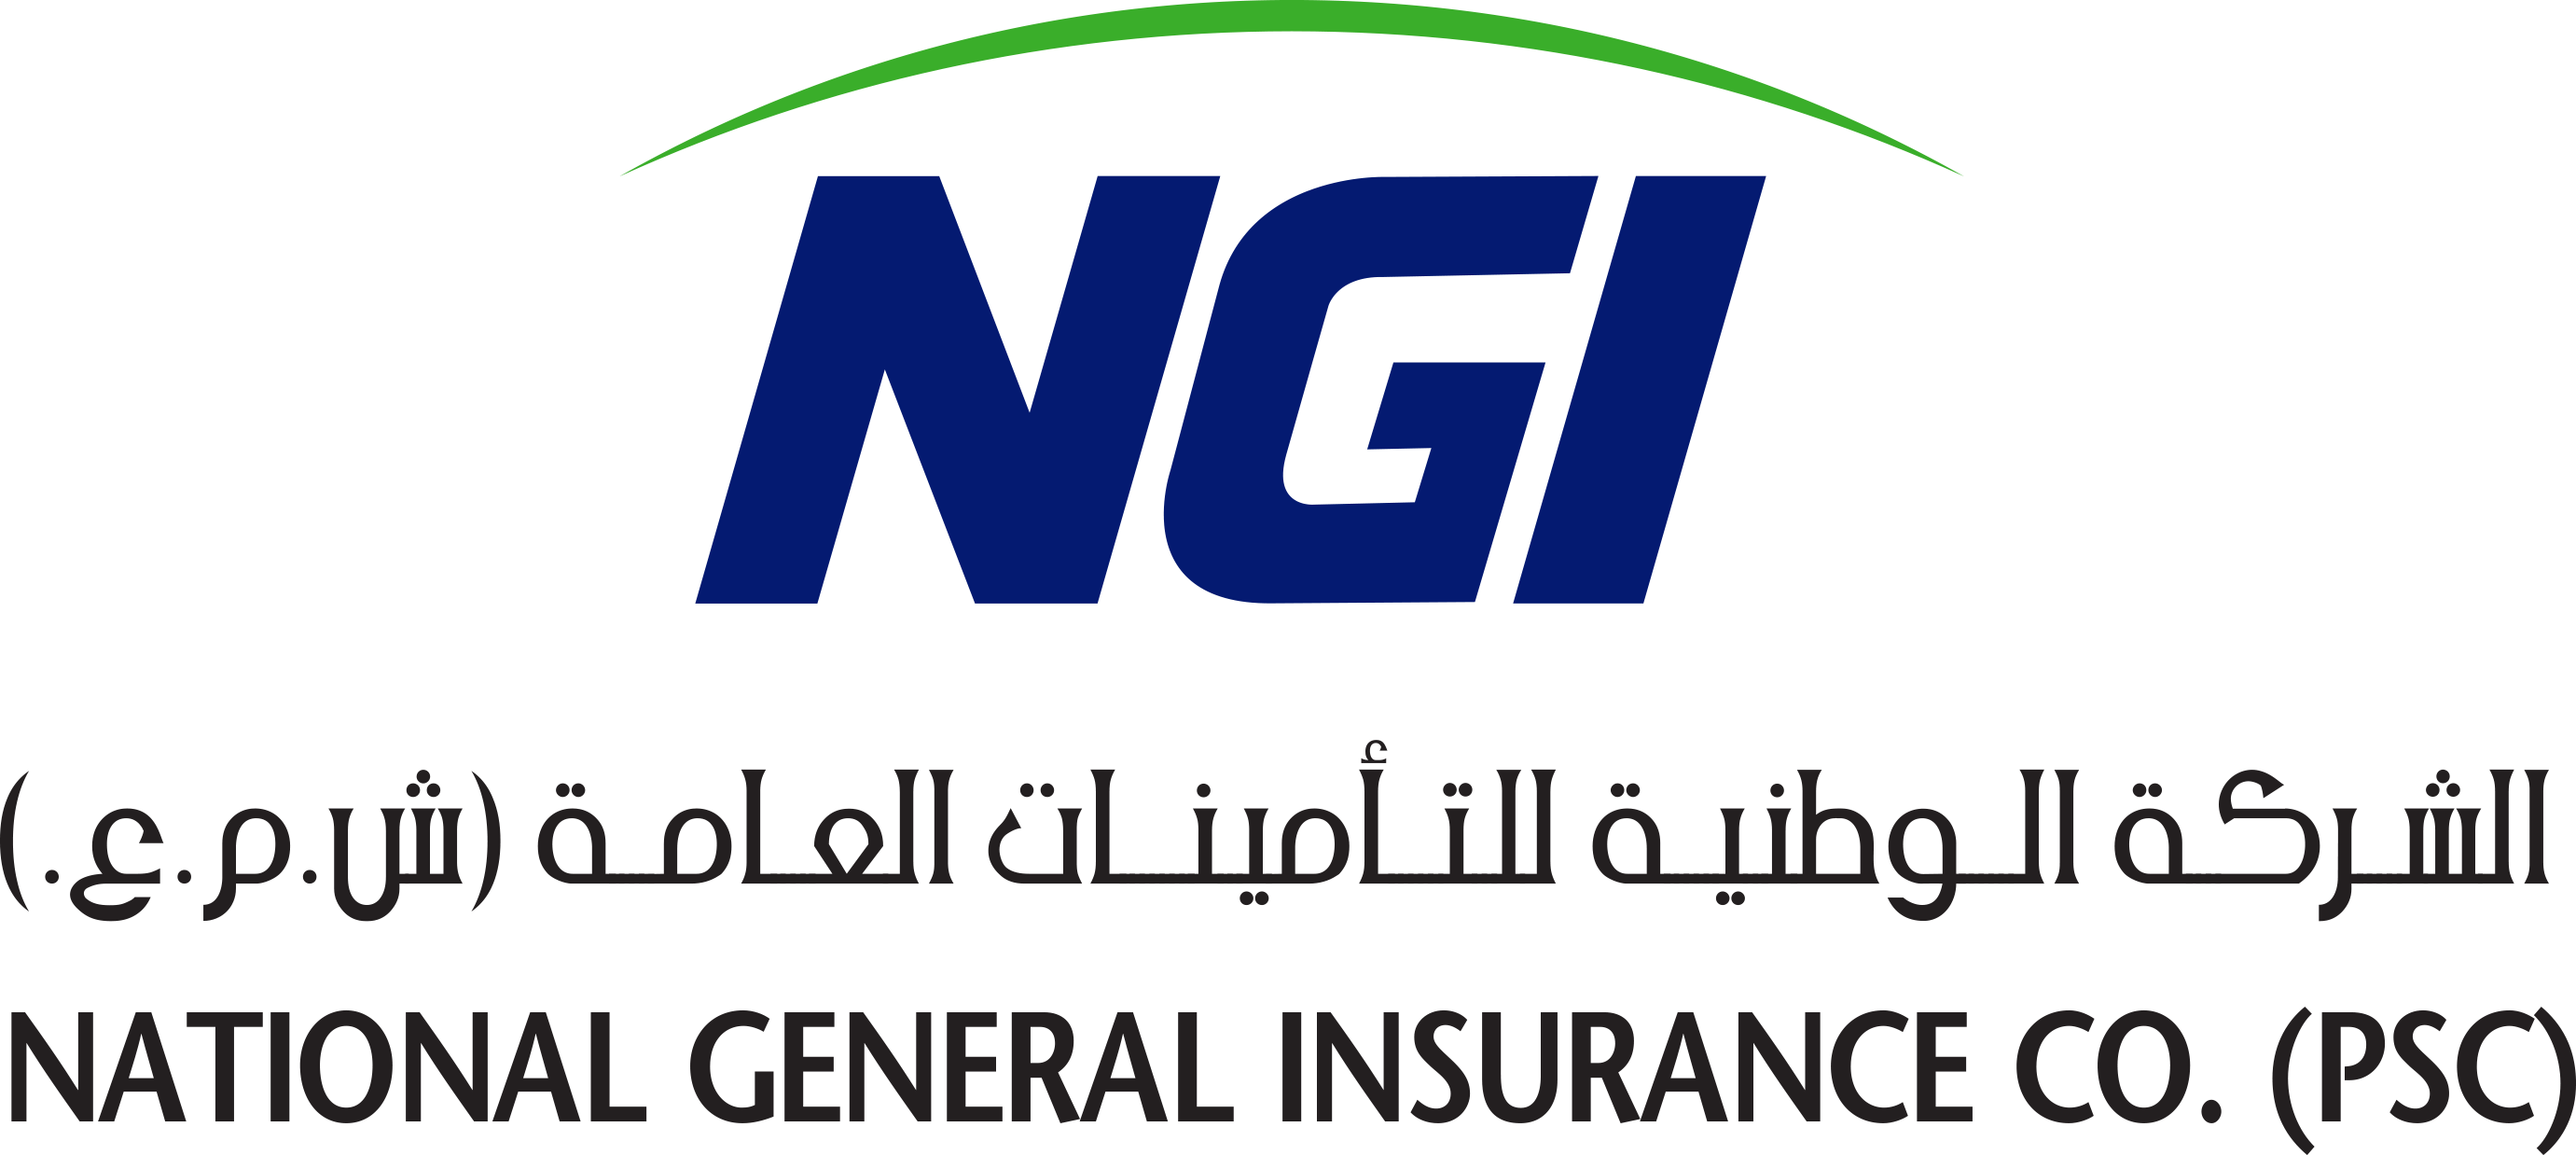 NGI-logo_HIGH_RES